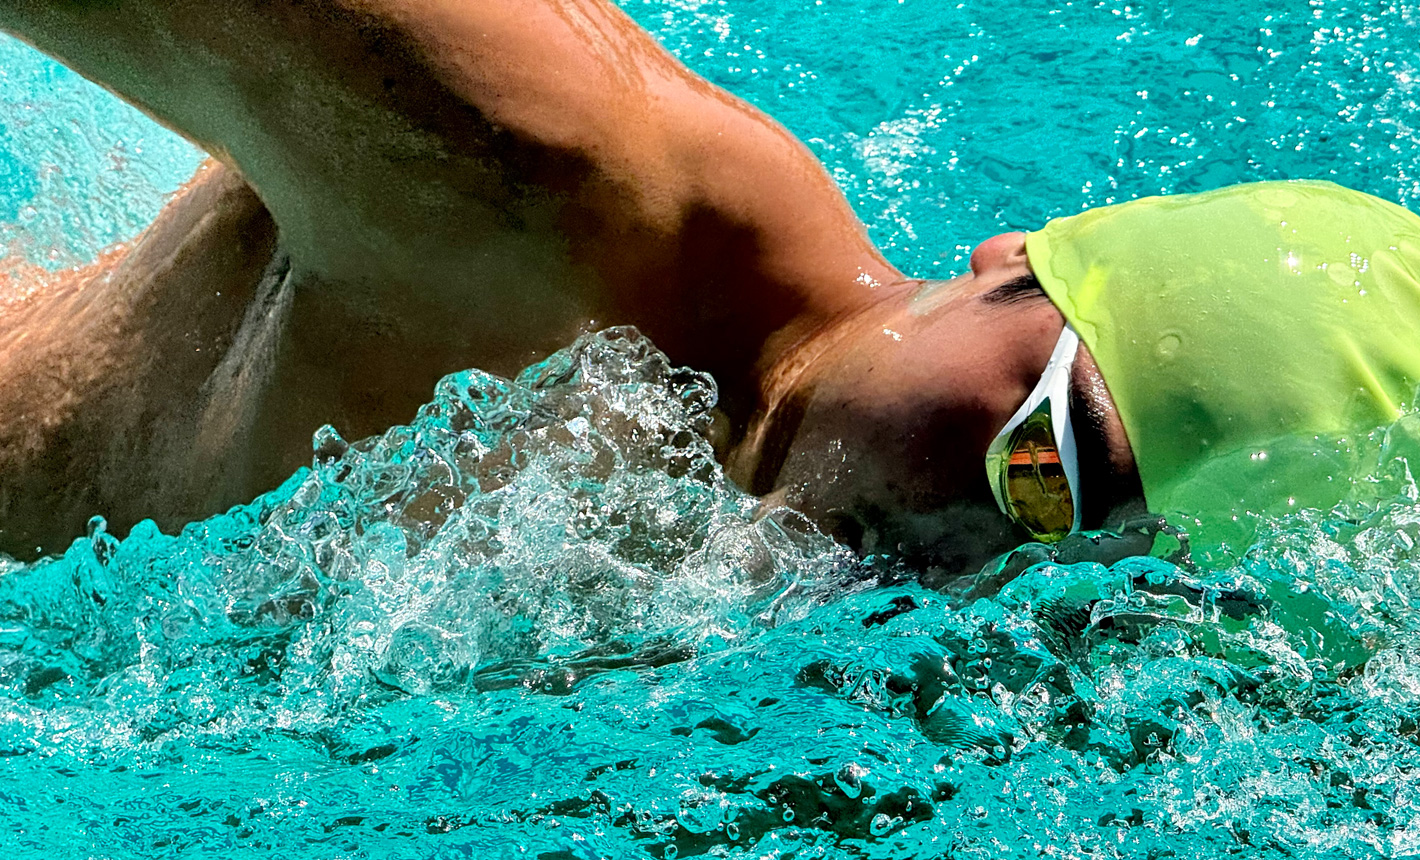 Une photo en gros plan très détaillée d’un homme qui nage dans une piscine en éclaboussant de l’eau